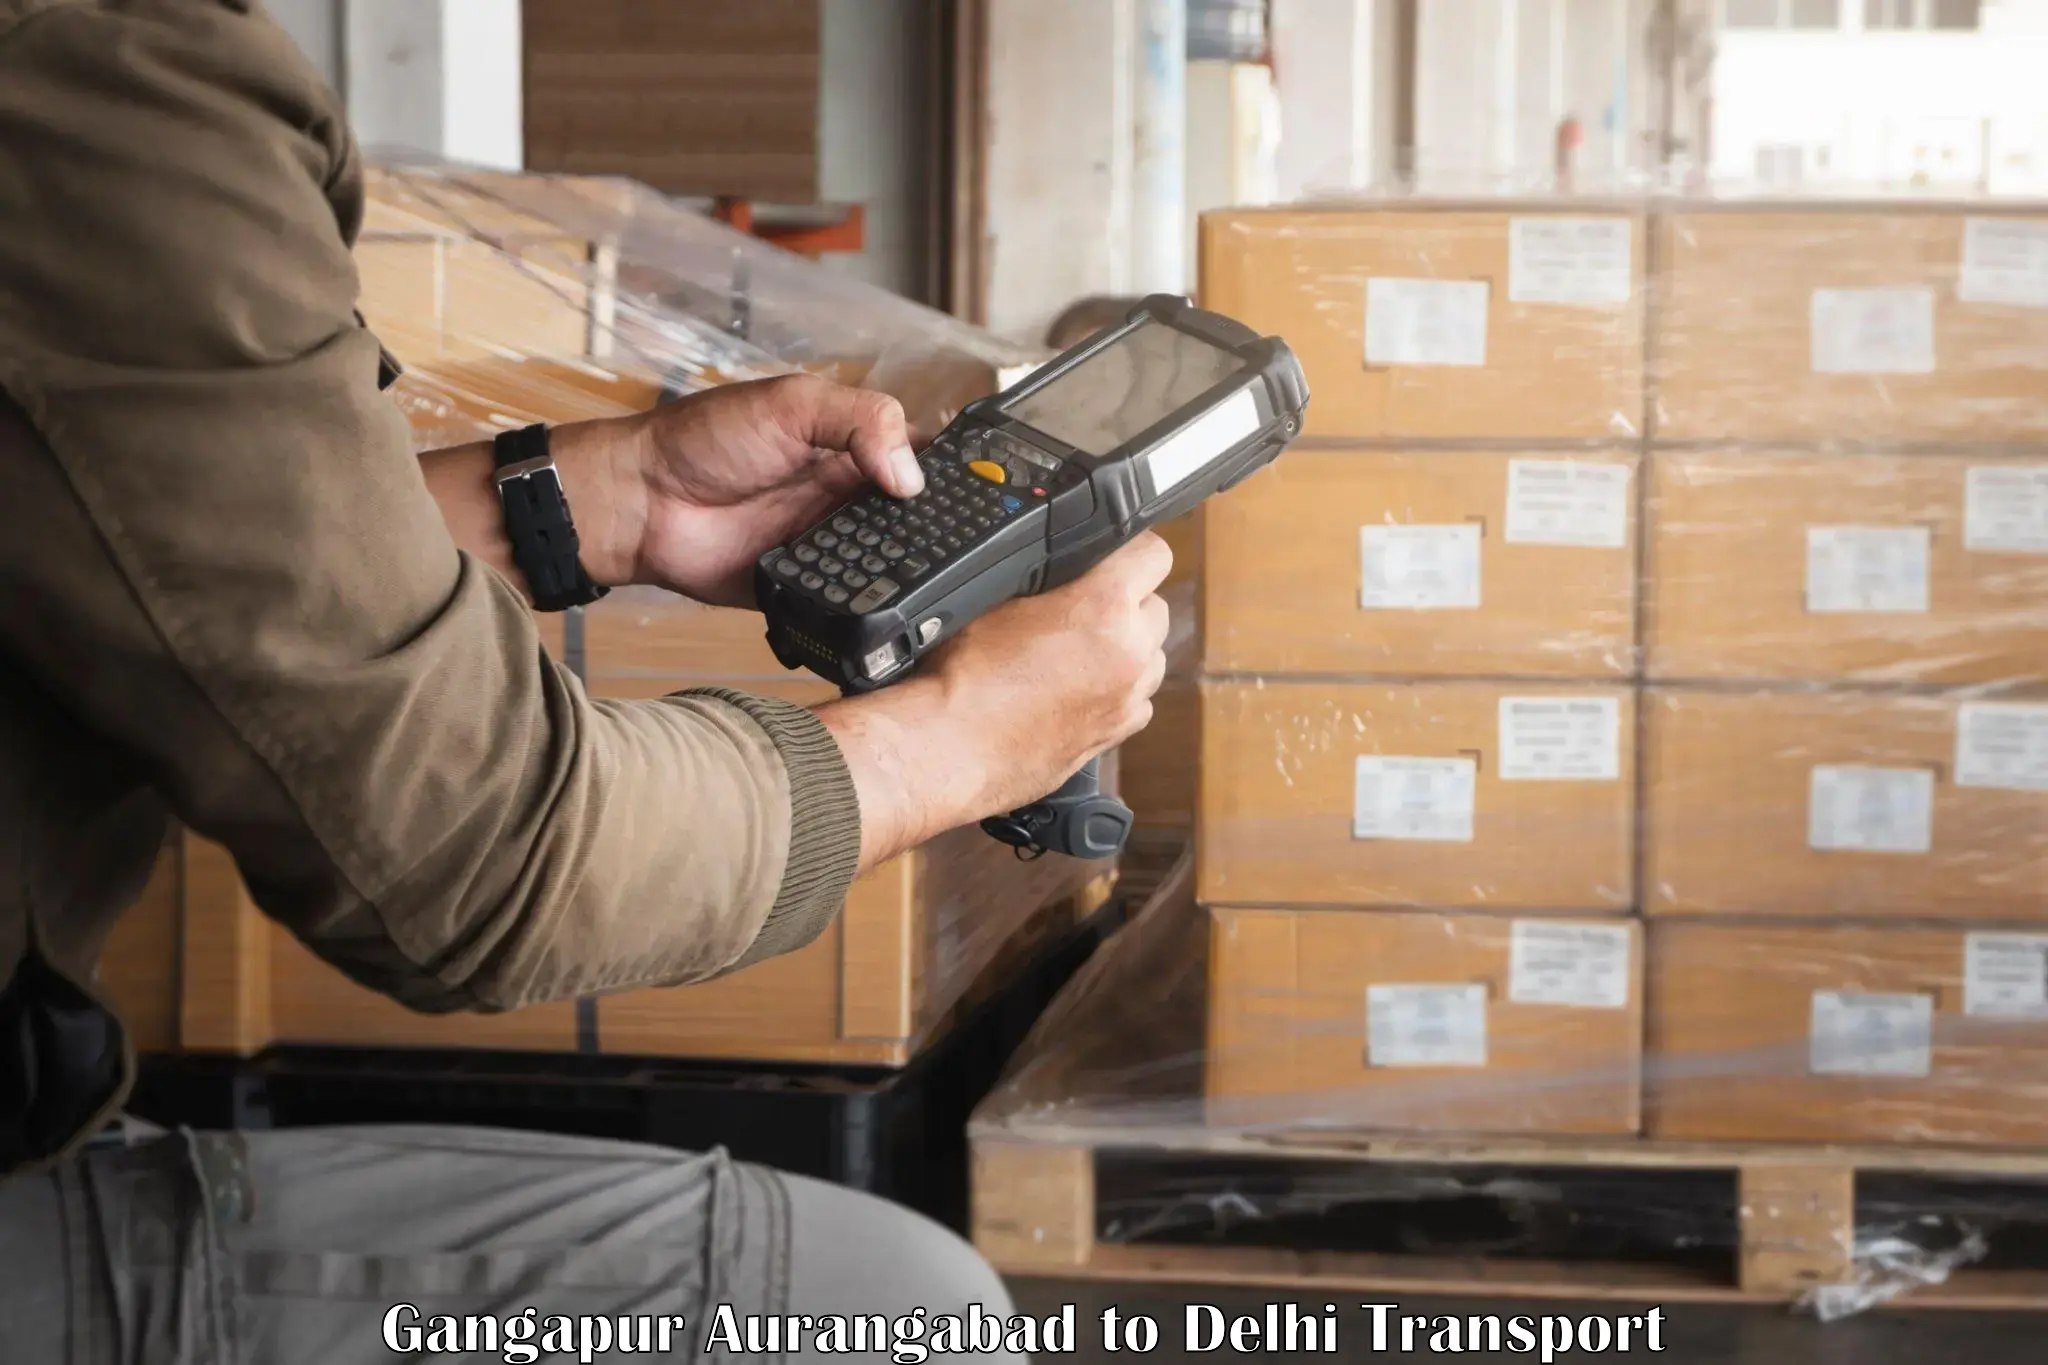 Bike shipping service Gangapur Aurangabad to Sansad Marg